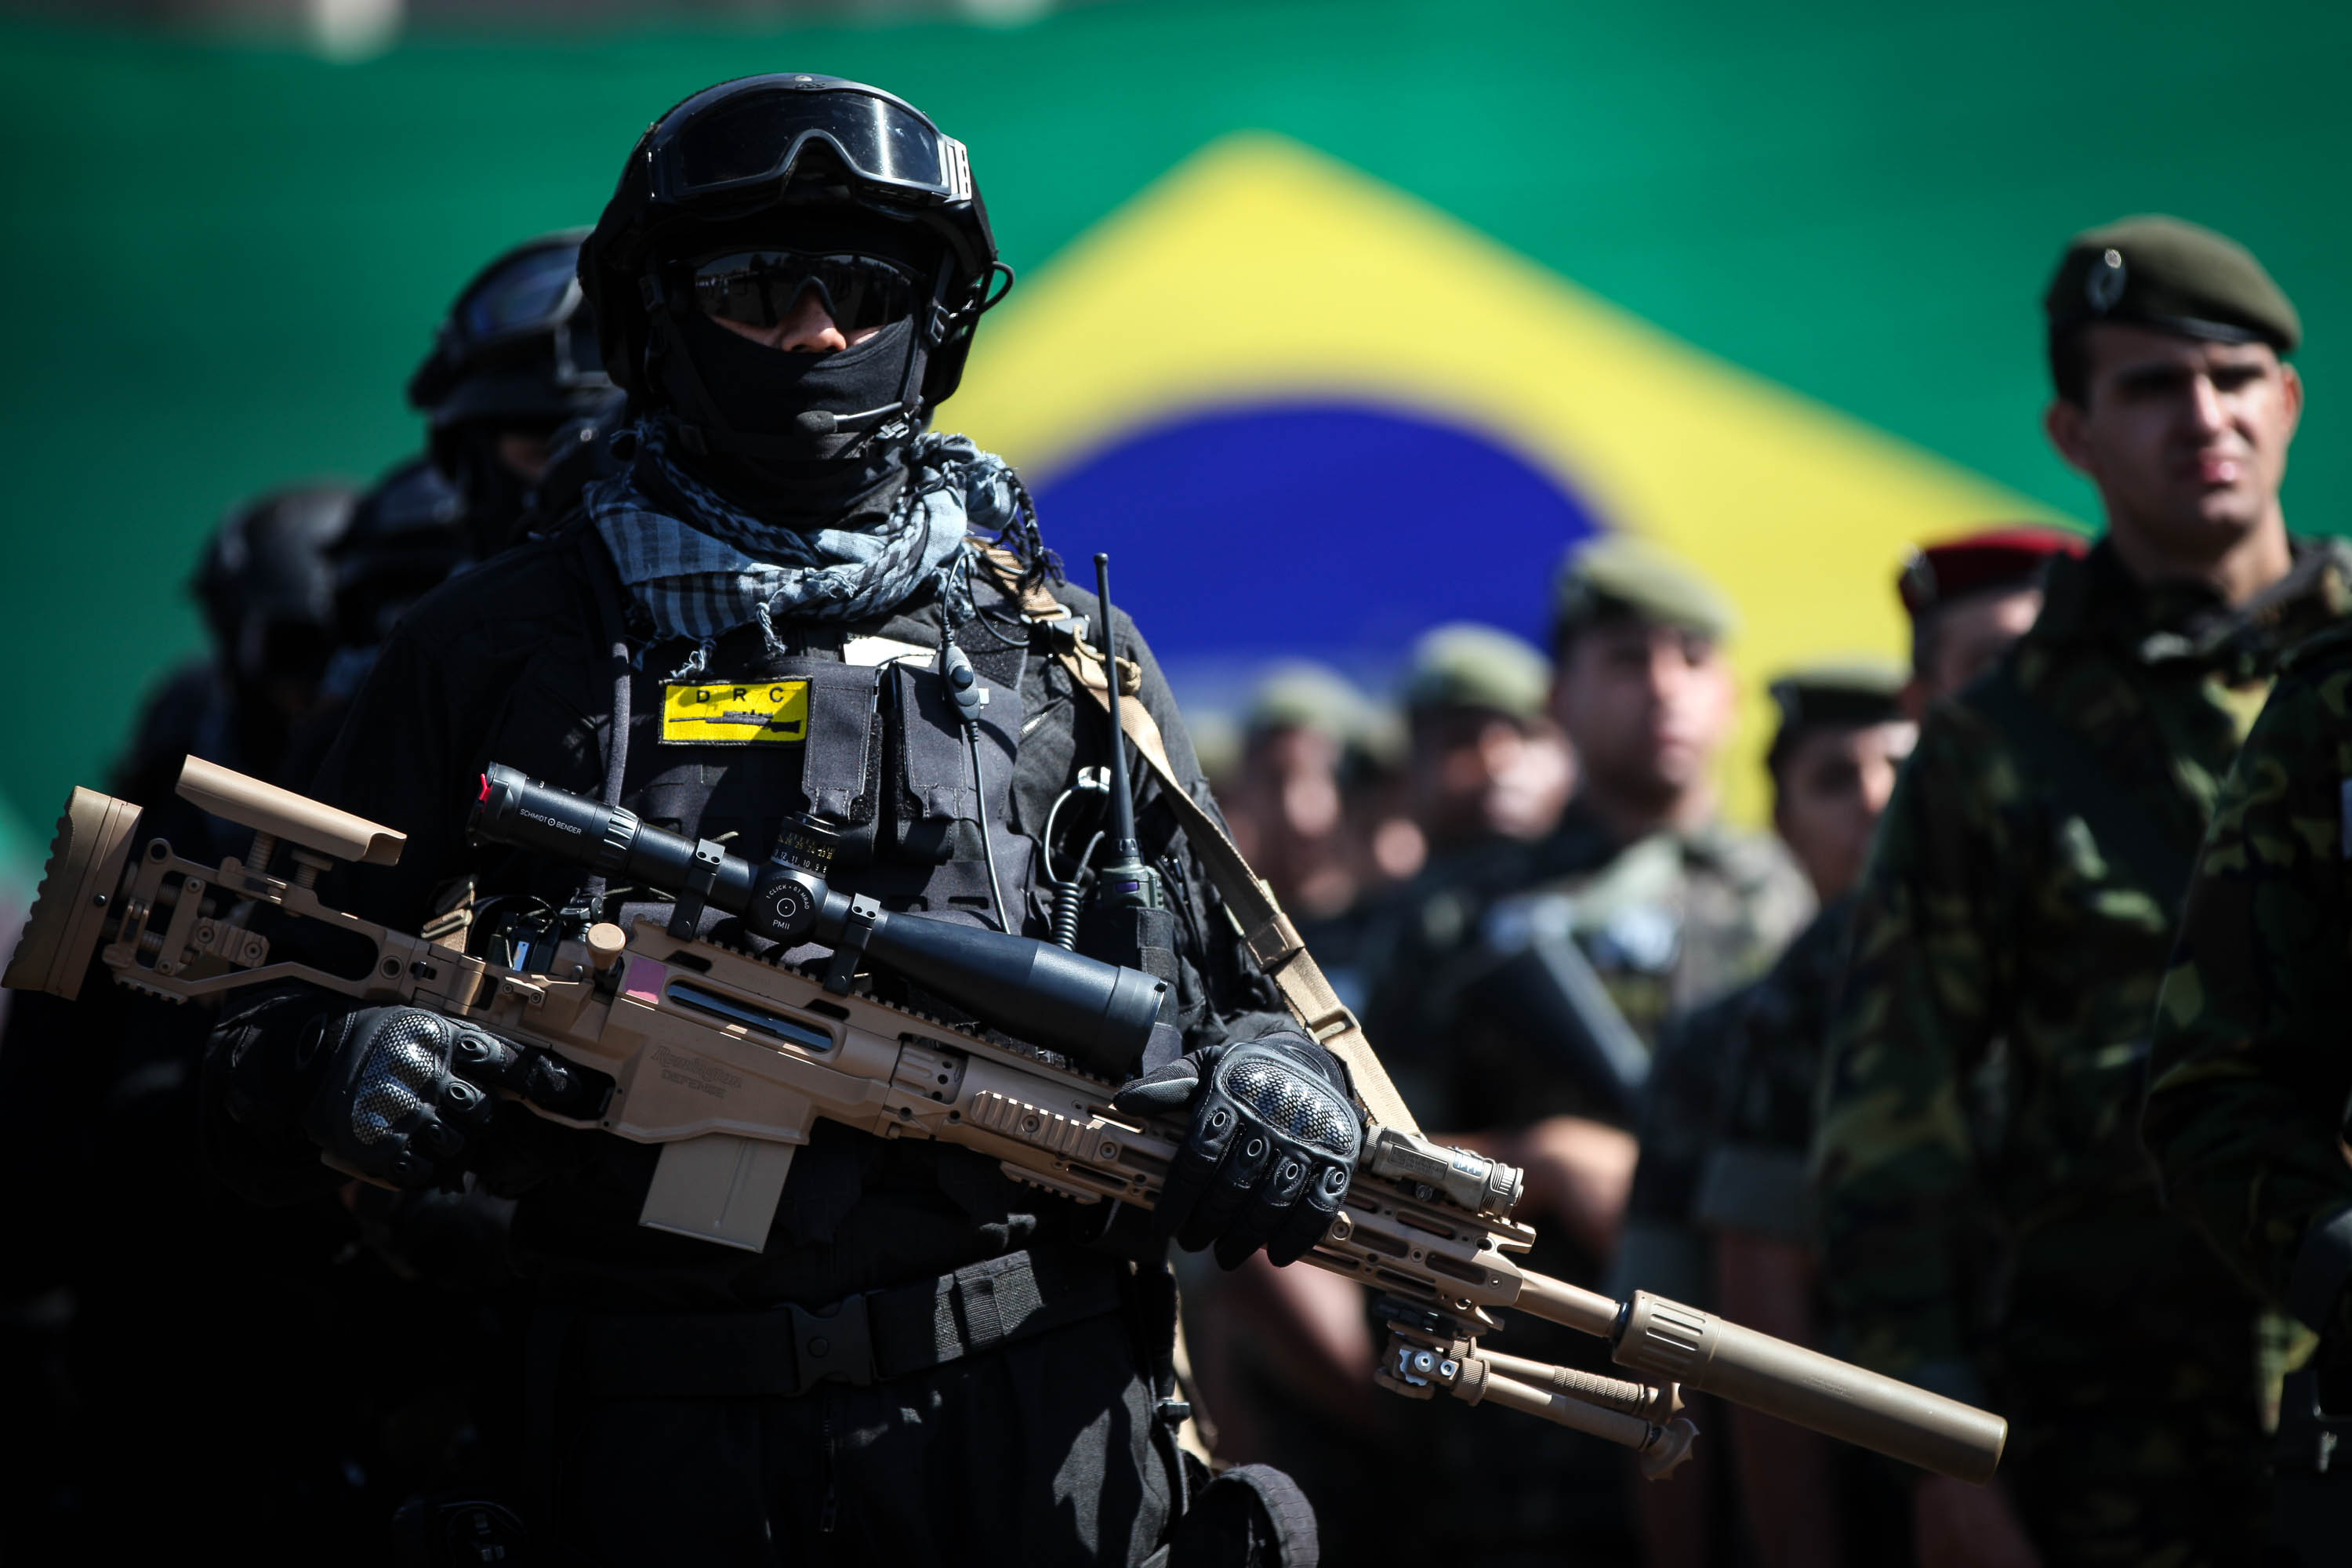 Brasil presenta fuerzas de seguridad para los Juegos Olímpicos Río 2016